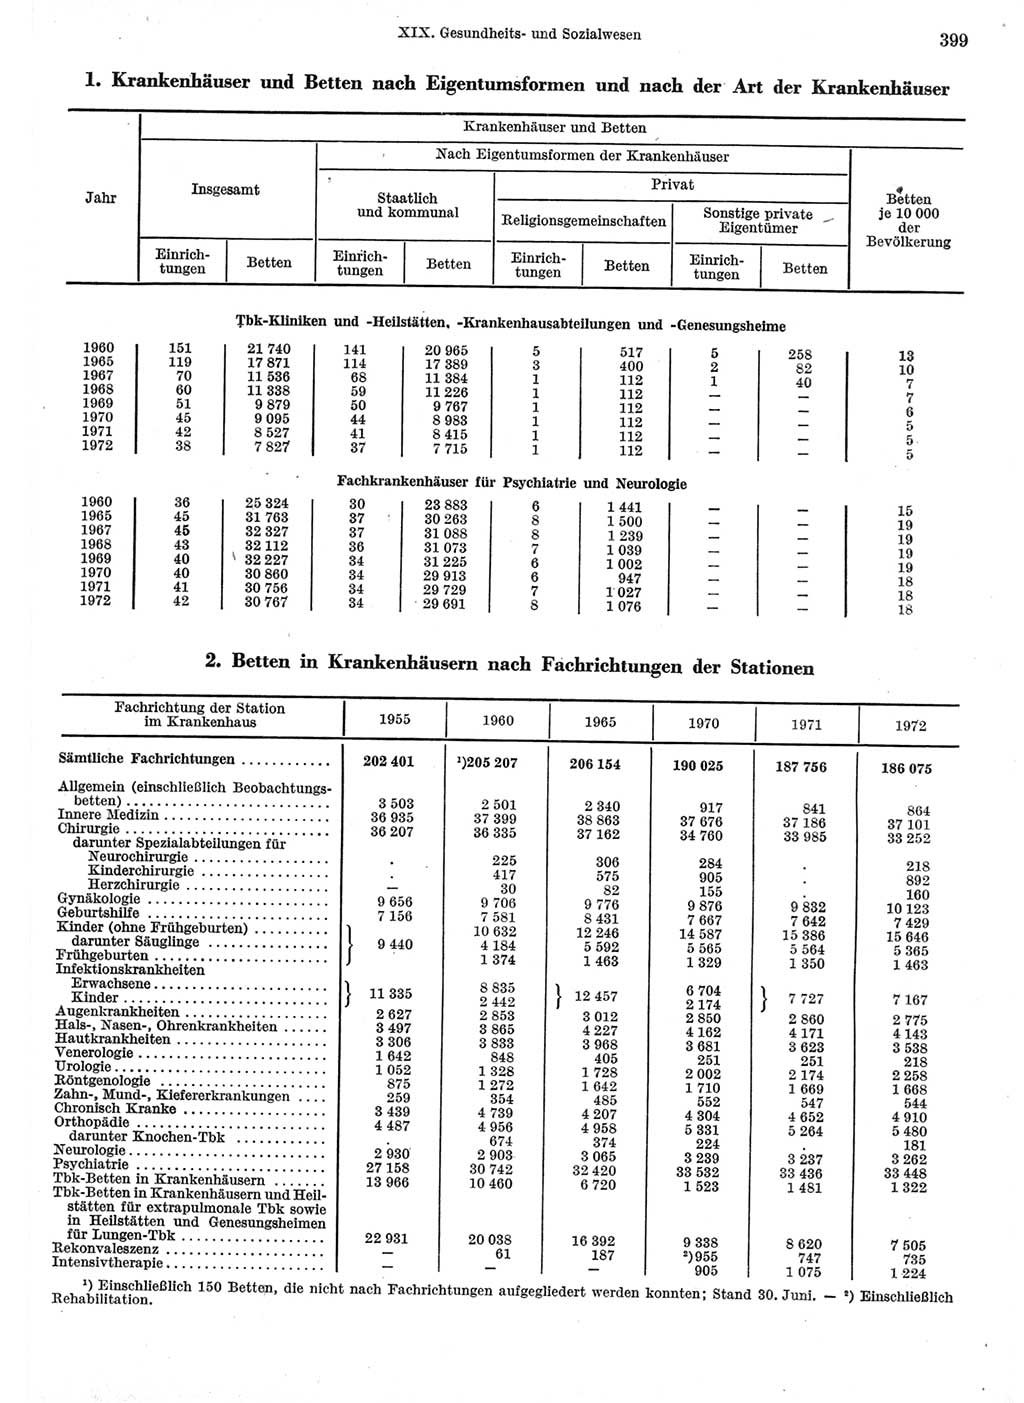 Statistisches Jahrbuch der Deutschen Demokratischen Republik (DDR) 1973, Seite 399 (Stat. Jb. DDR 1973, S. 399)